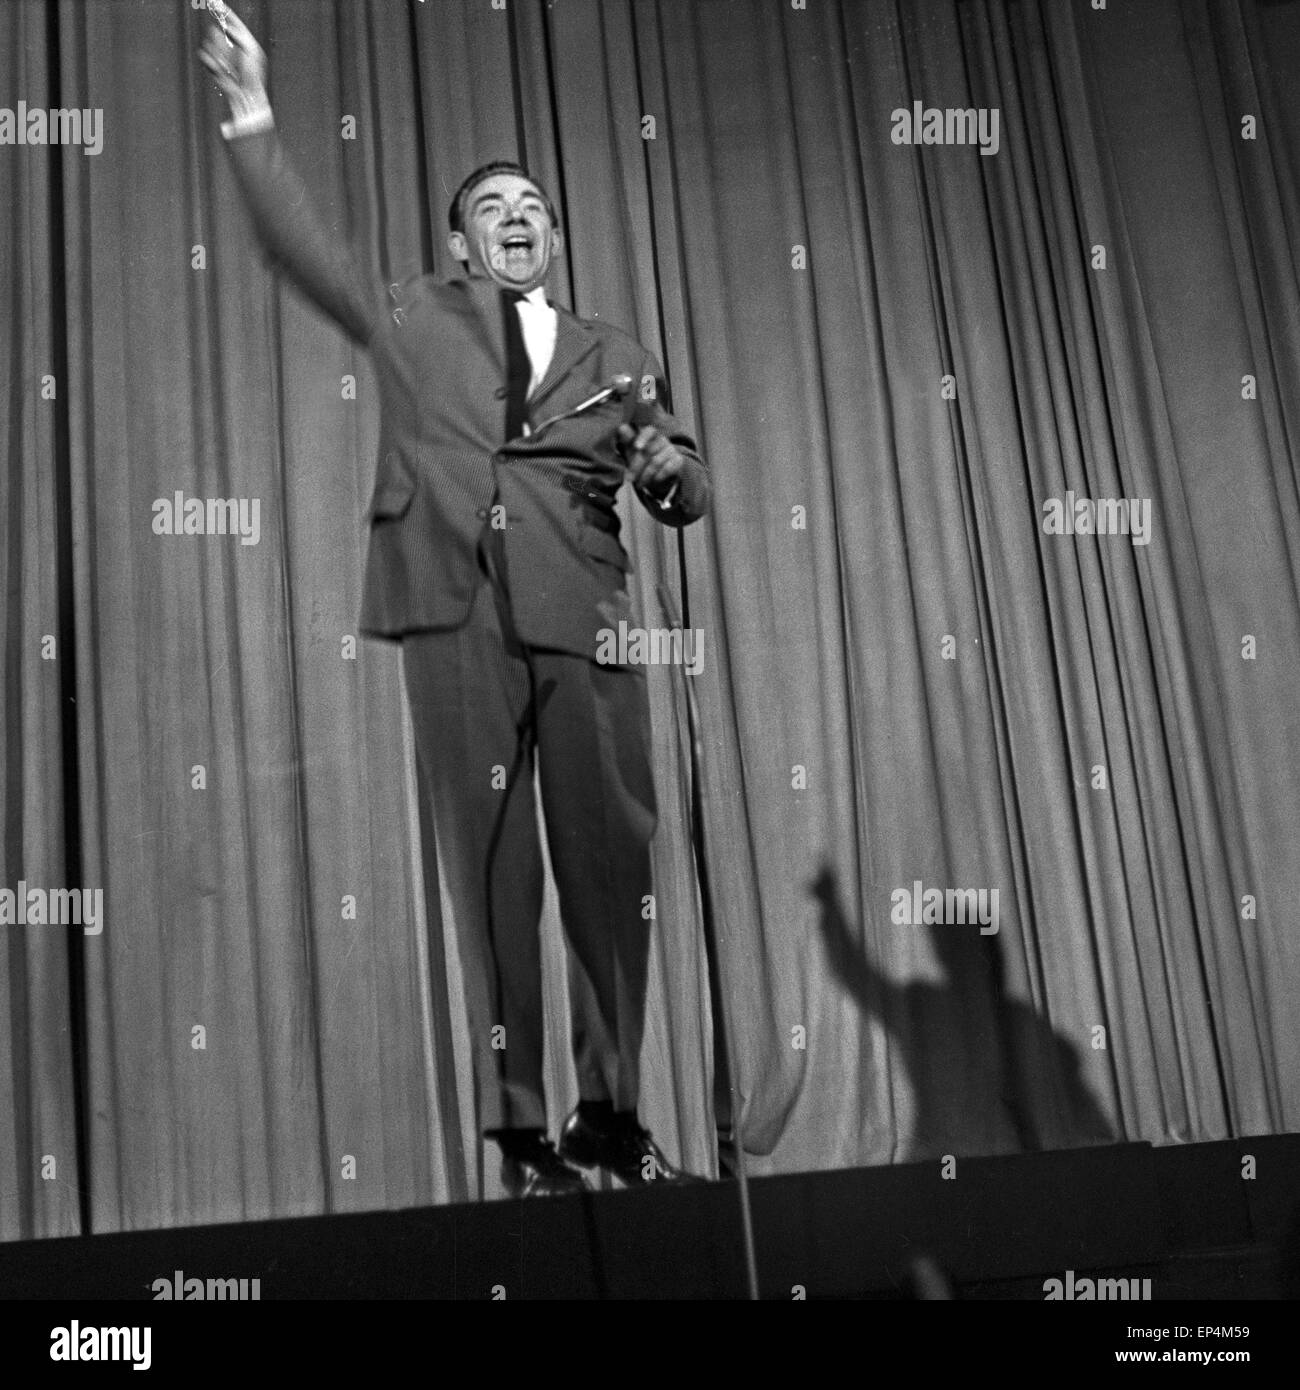 Deutscher Showmaster und Entertainer Peter Frankenfeld auf der Bühne, wahrscheinlich die Show 'Guten Abend!', Deutschland 196 Stock Photo